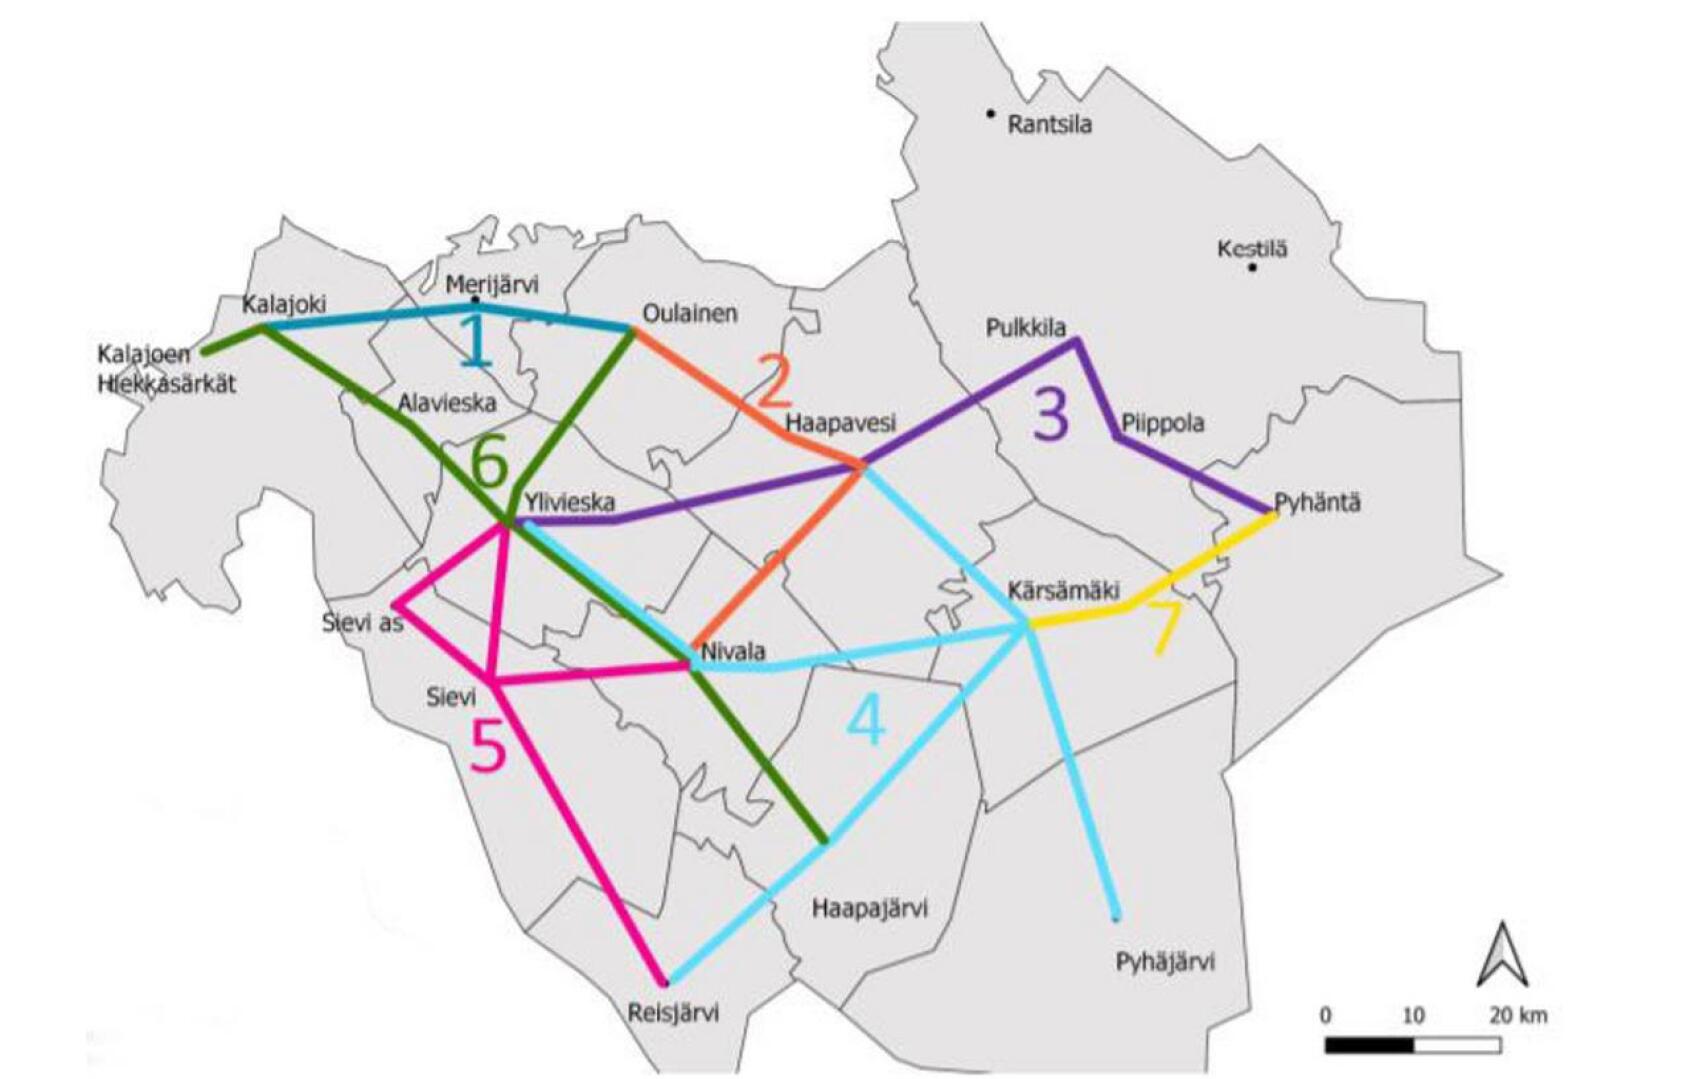 Kartassa näkyy yhteydet, joille ely on hankkimassa joukkoliikennettä jokilaaksojen alueella. Lisäksi alueella on markkinaehtoista sekä kuntien rahoittamaa joukkoliikennettä. 